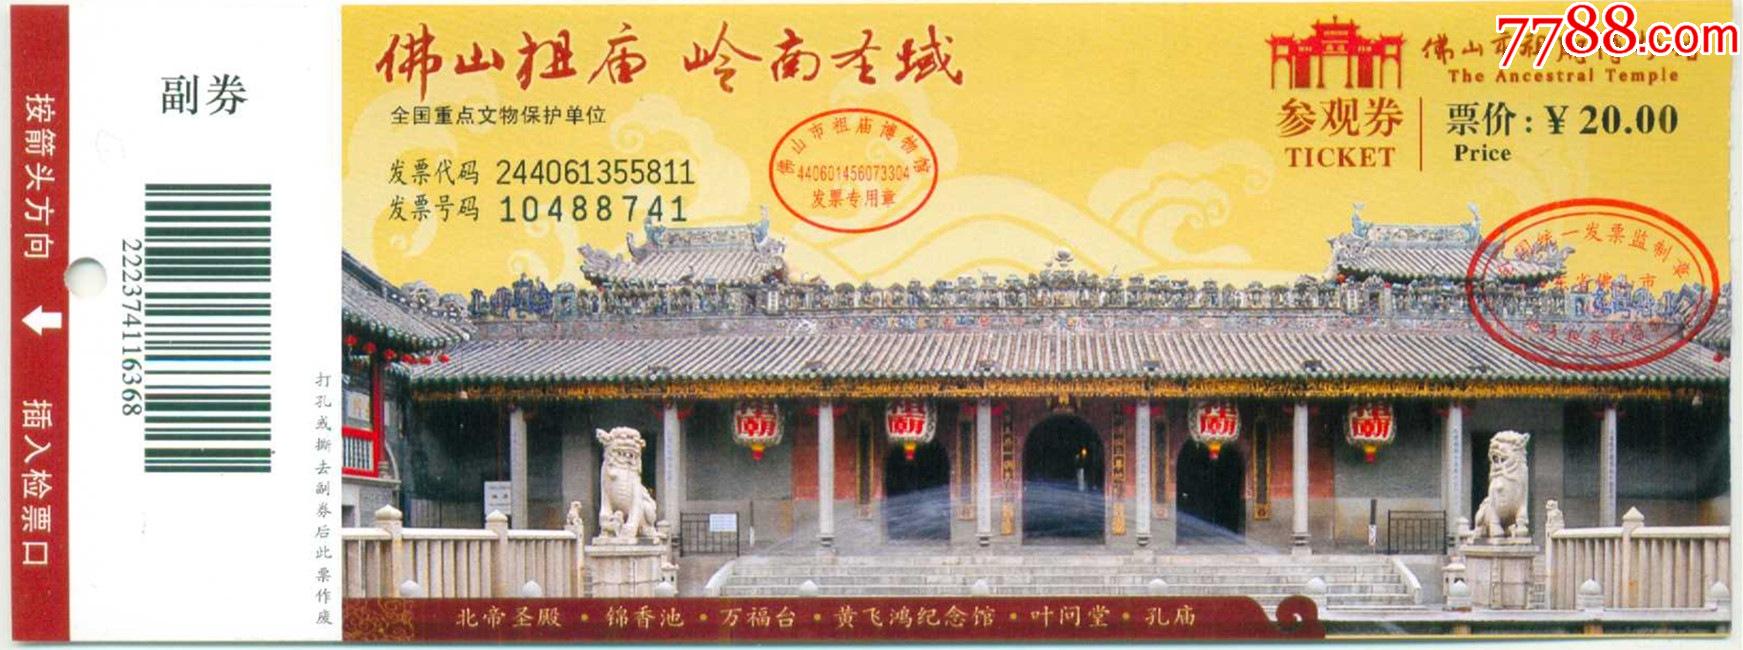 佛山祖庙博物馆门票图片